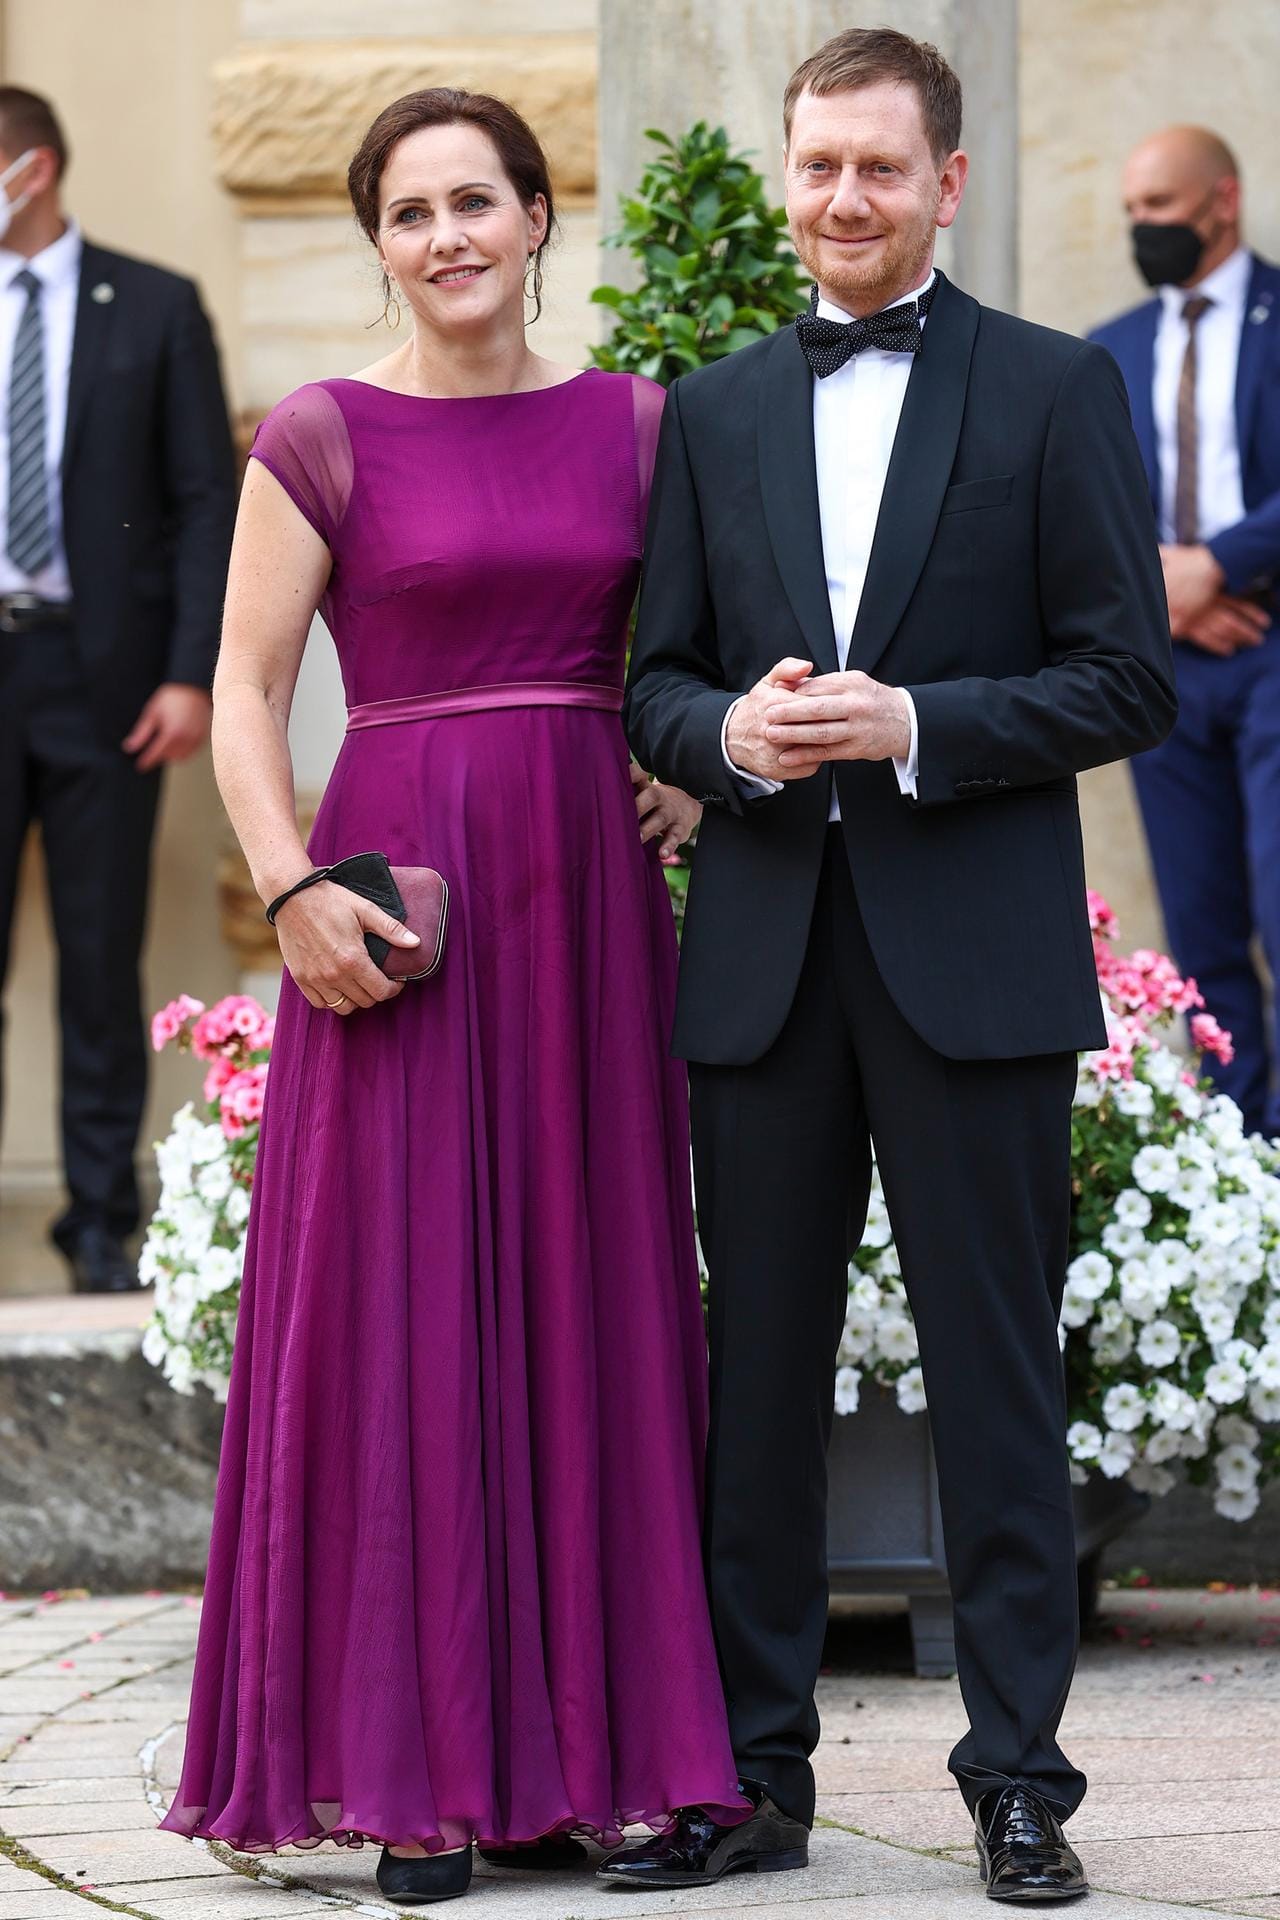 Michael Kretschmer, Ministerpräsident von Sachsen, und seine Frau Annett Hofmann